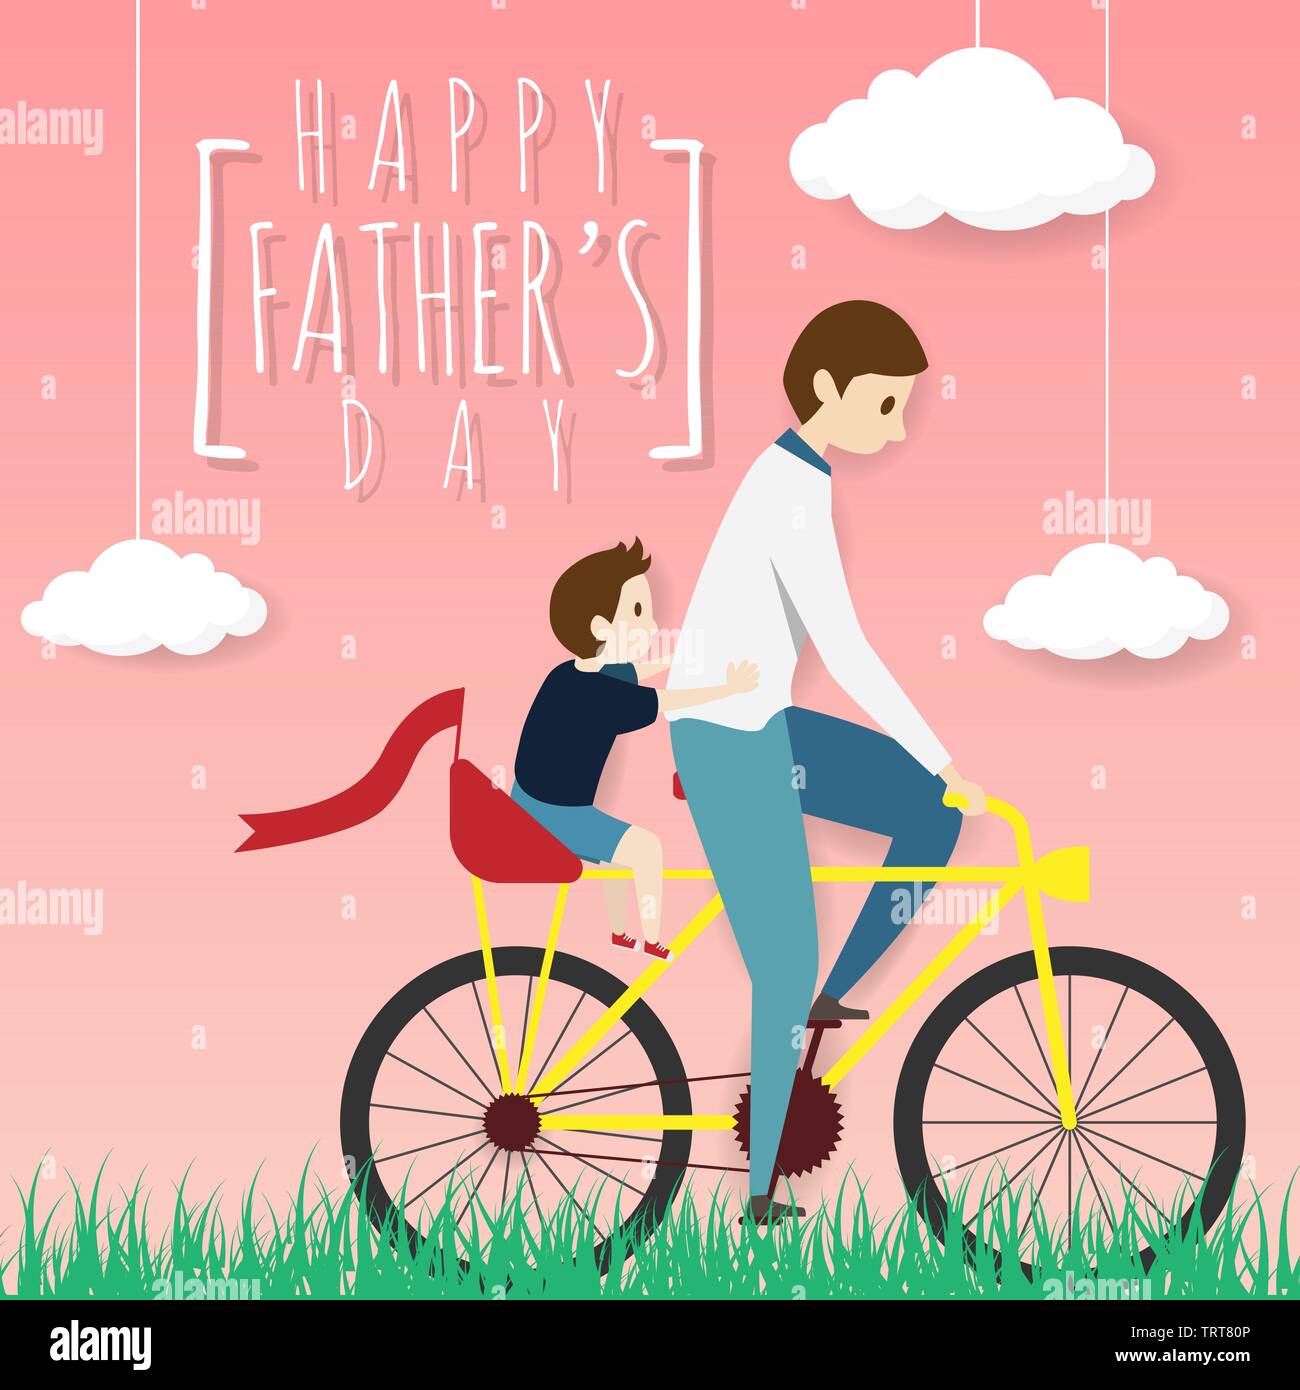 Vecteur d'happy father's day Greeting card. père cycliste vélo avec son fils monter sur un leurs, équitation dans la pelouse avec des nuages blancs sur rose b Illustration de Vecteur